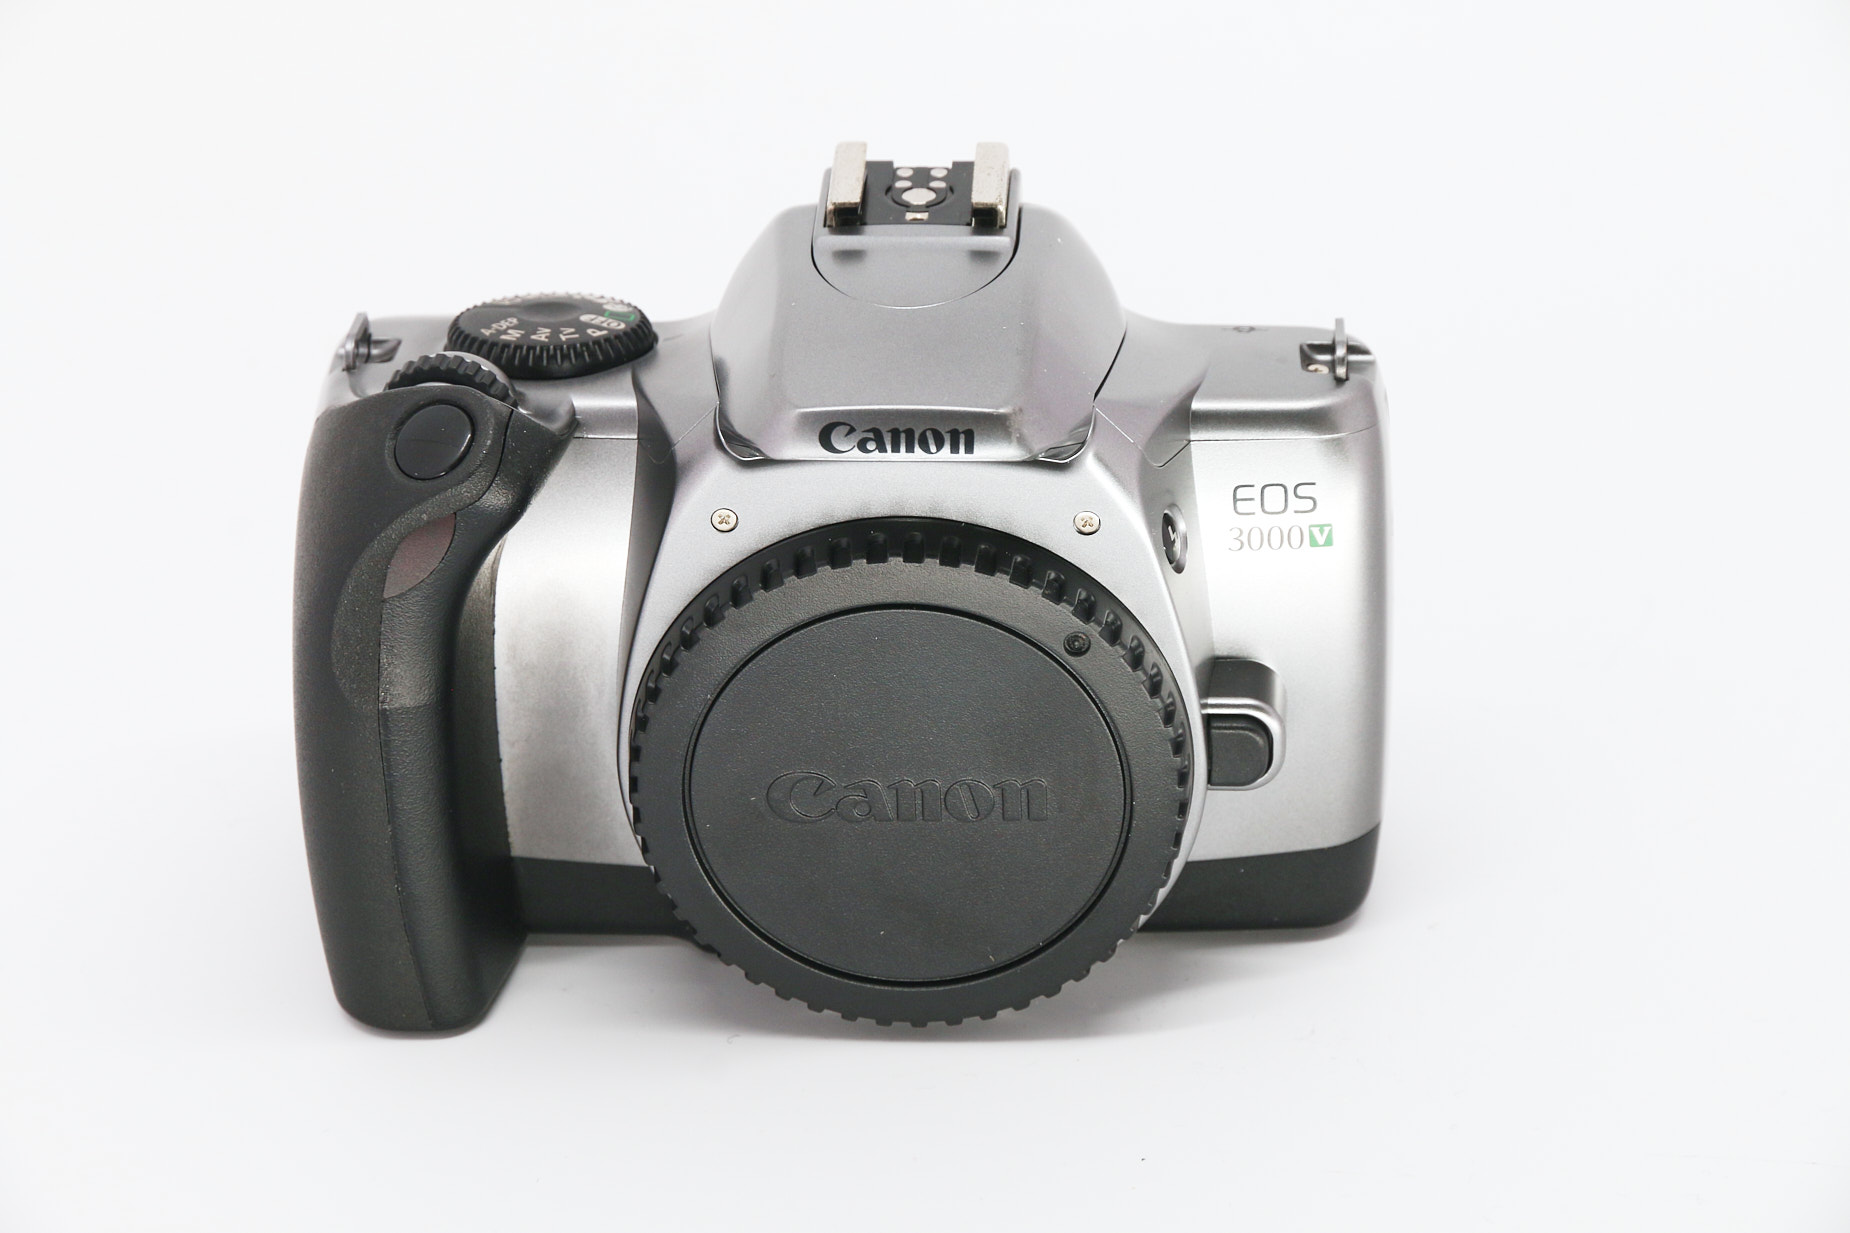 Canon EOS 3000V gebraucht Bild 01